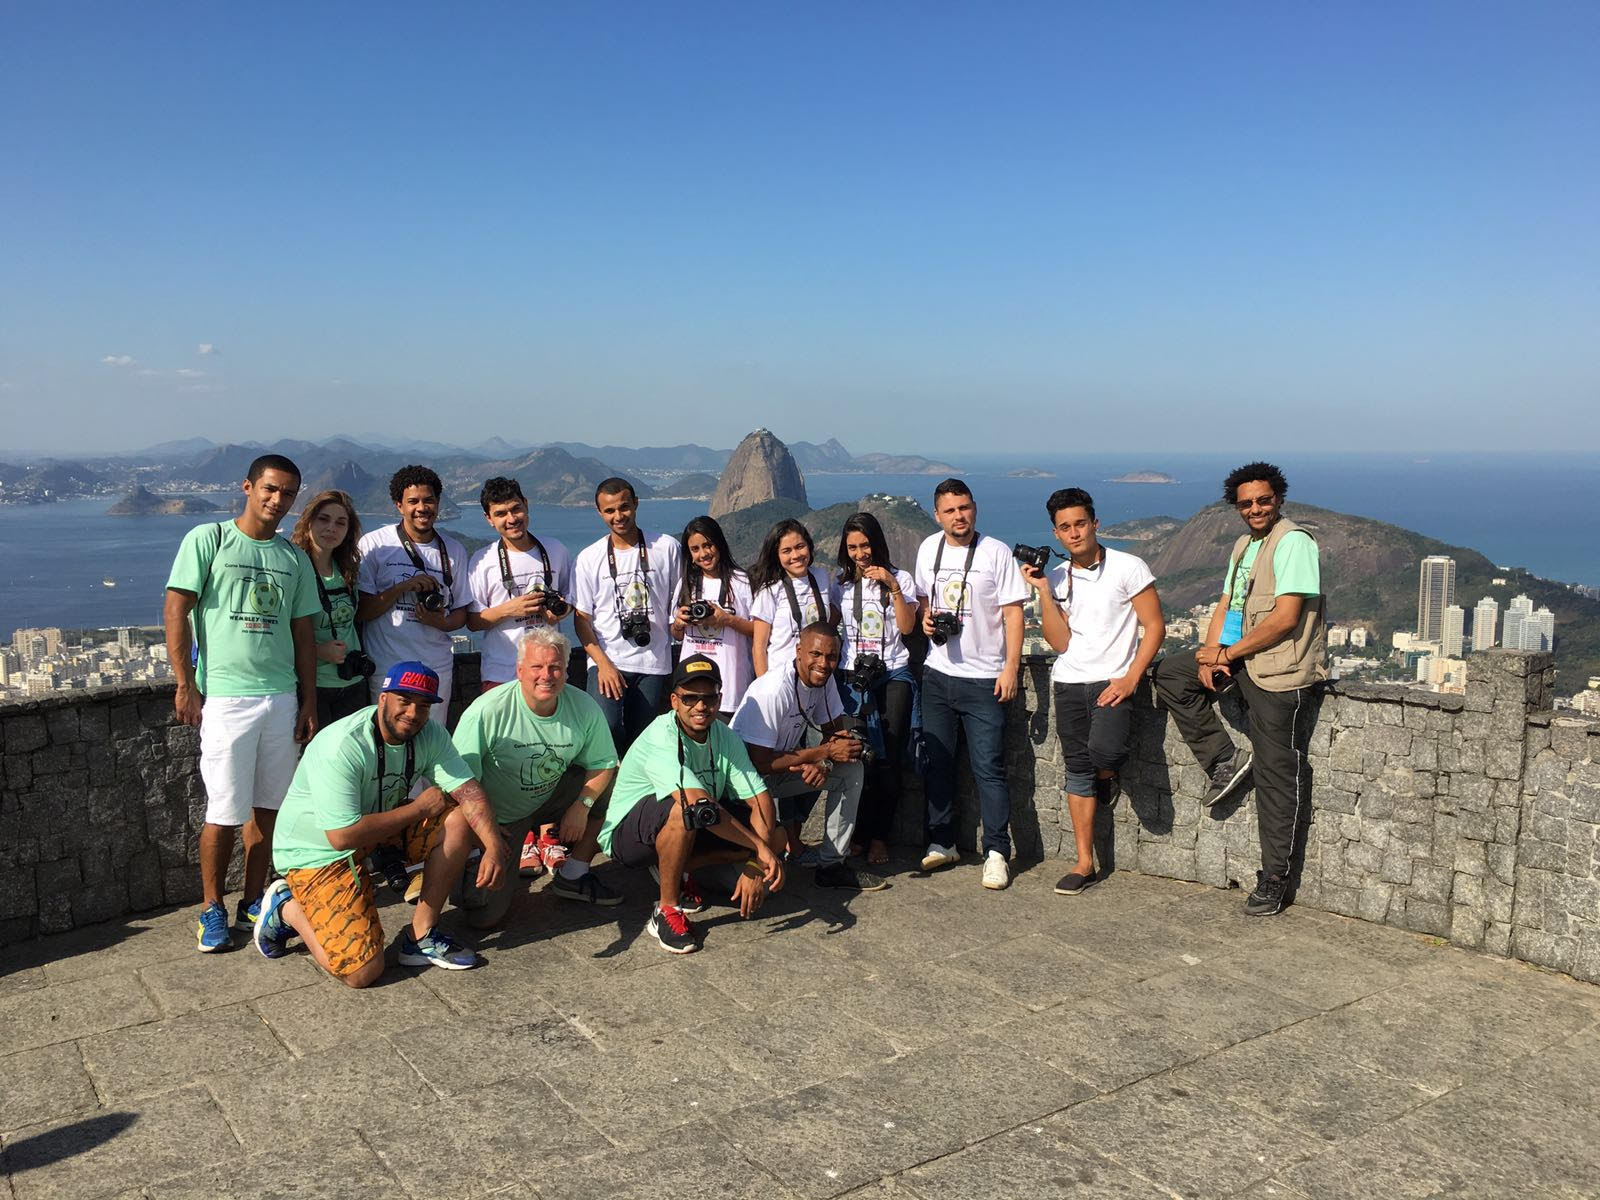 Jovens do Morro do Turano registram em foto os impactos das Olimpíadas no Rio